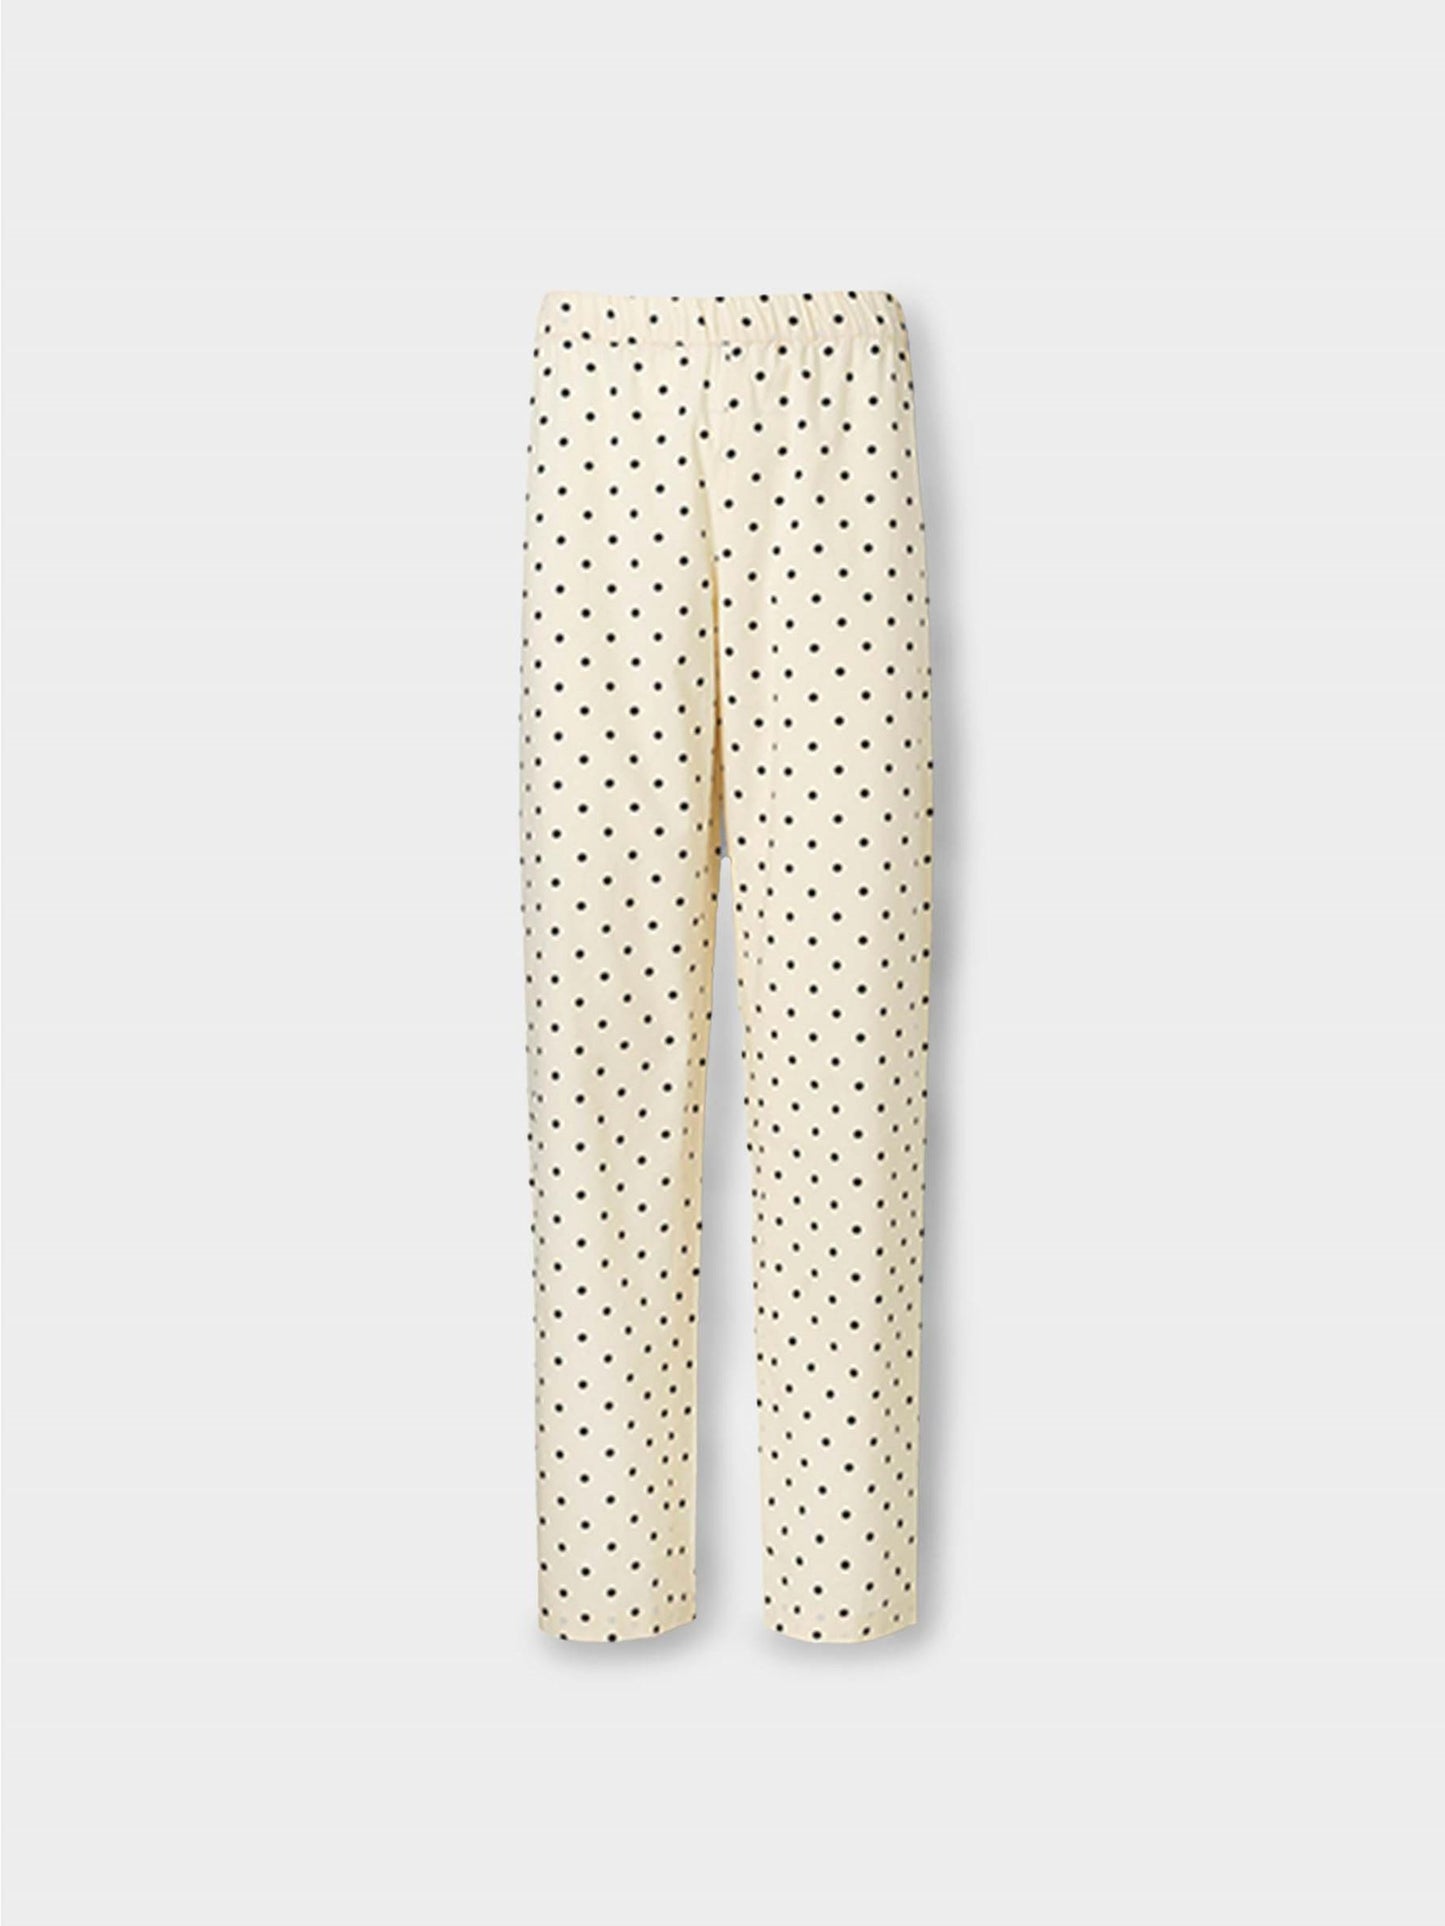 Dot Pyjamas Pants Clothing   - Becksöndergaard